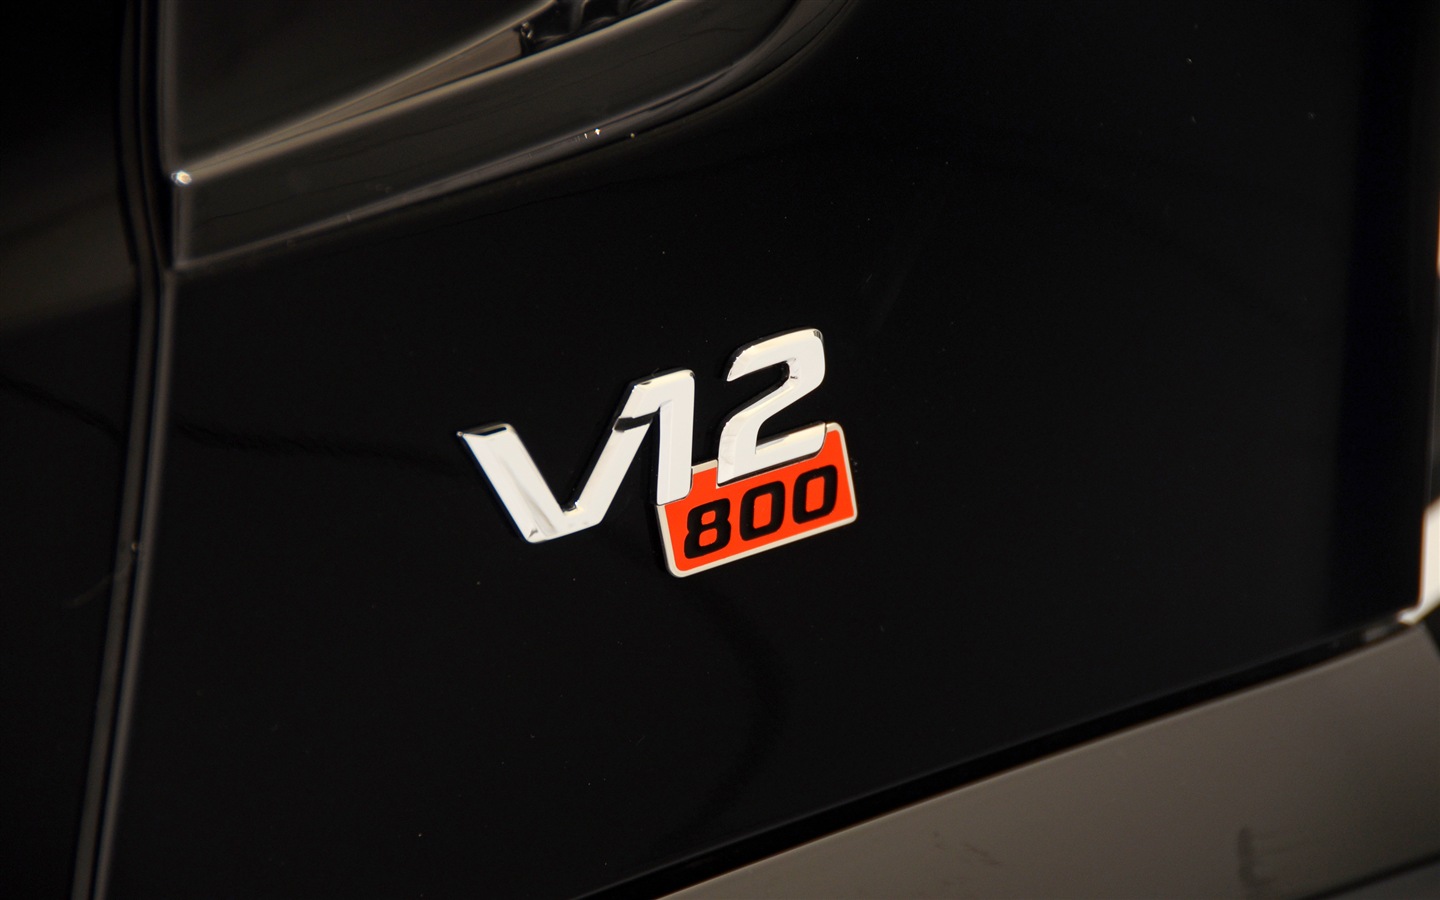 2013 Brabus 800 Roadster 博速 跑车高清壁纸17 - 1440x900